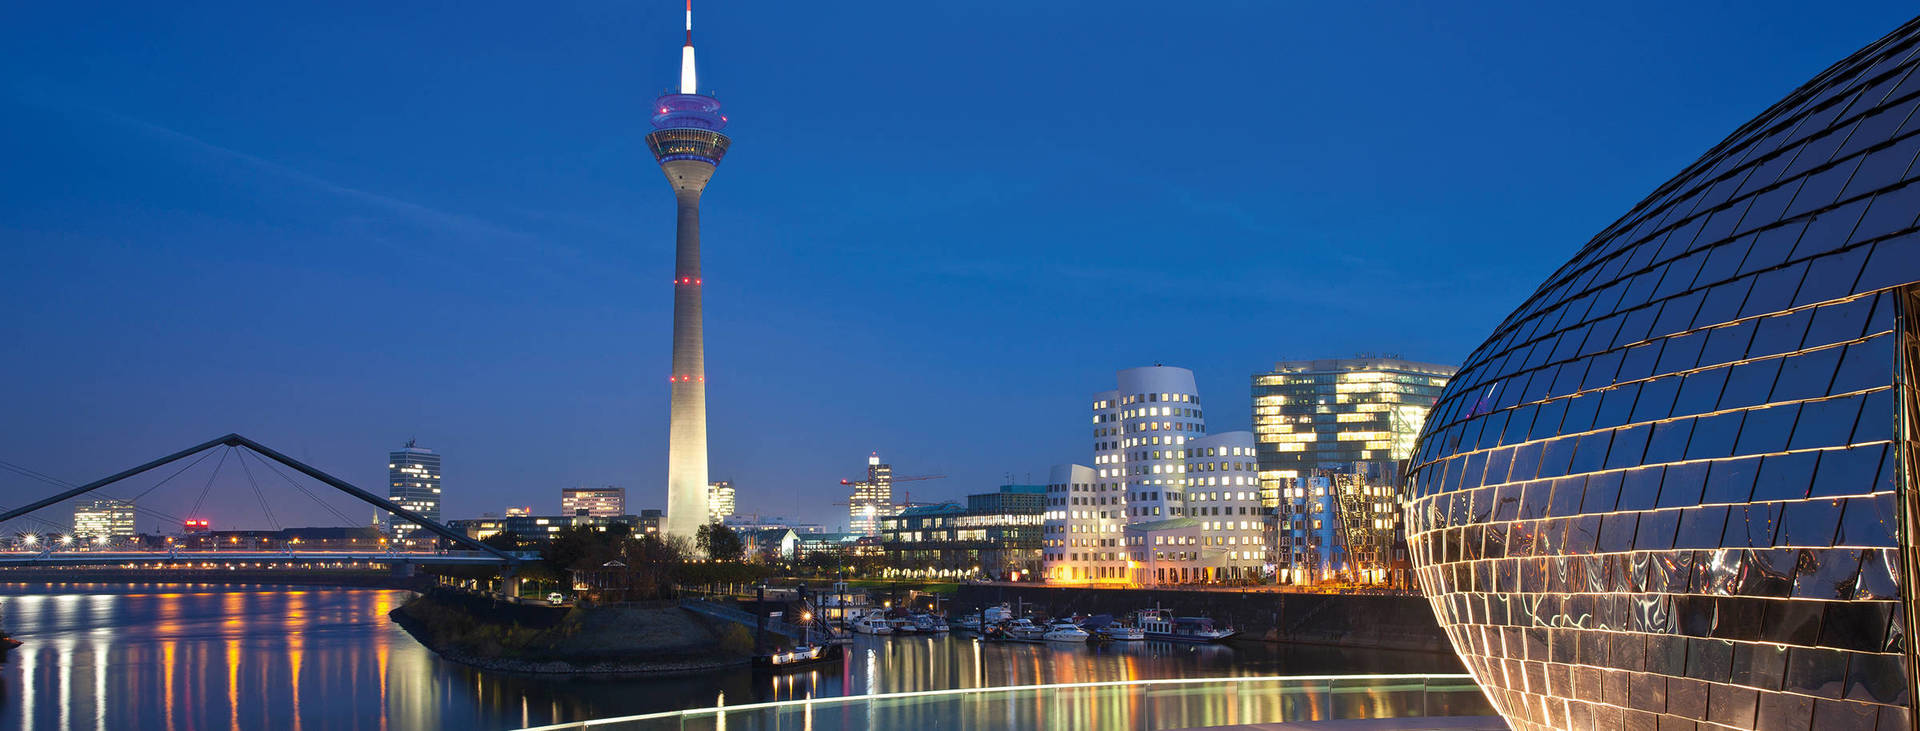 Viel zu erleben: Veranstaltungsorte in Düsseldorf - H-Hotels.com